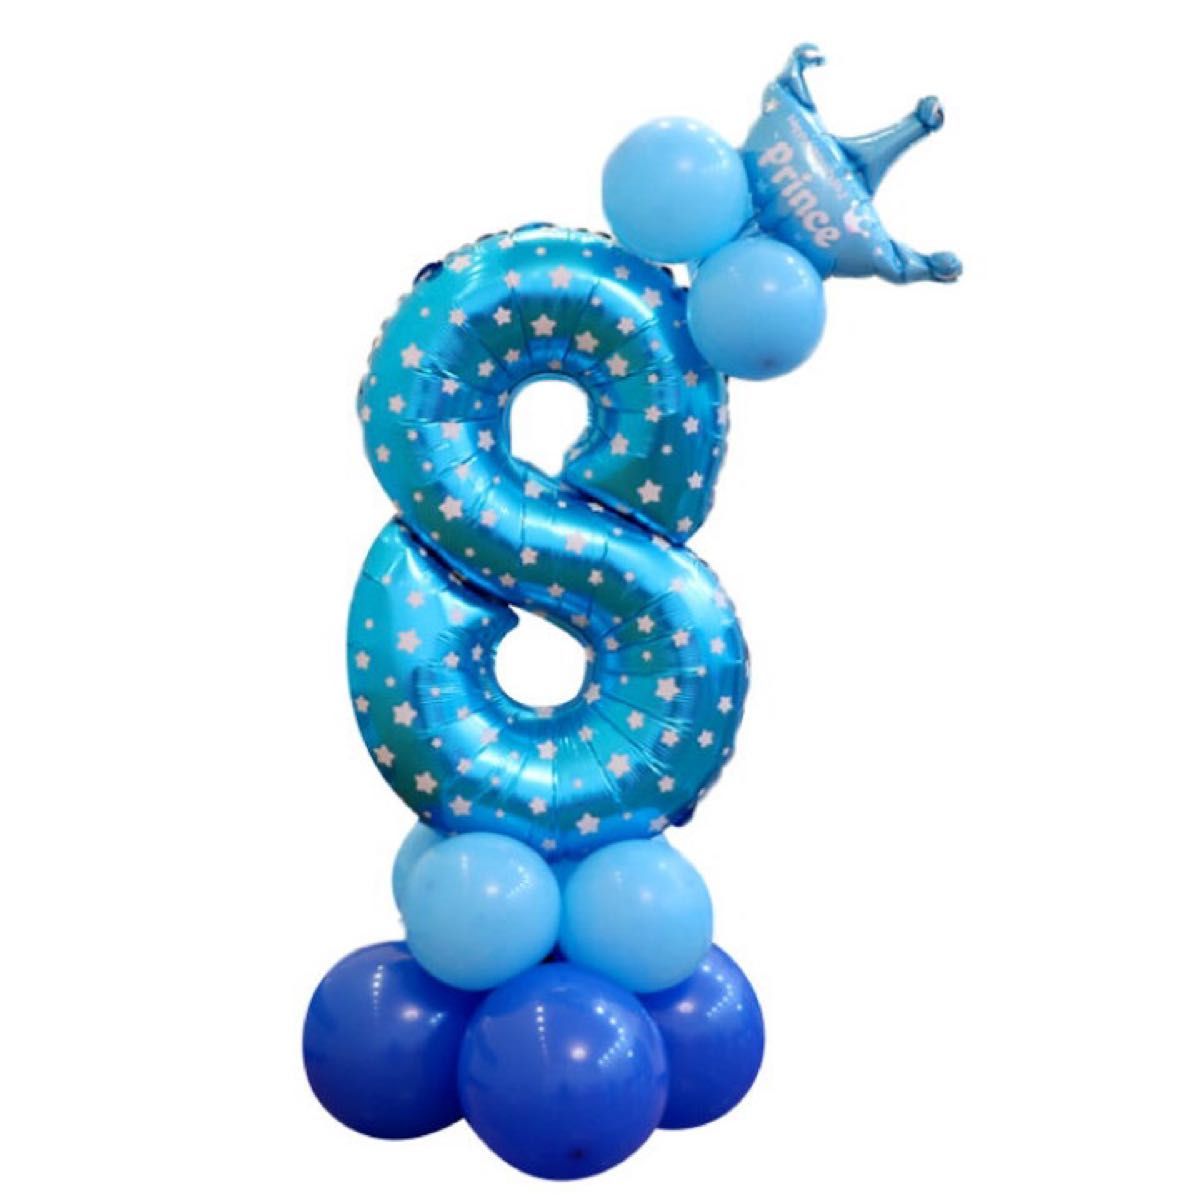 バルーン 風船 ナンバー8 誕生日 お祝い 記念 パーティー 飾り 装飾 数字 撮影 写真 アルミブルー 青 星柄